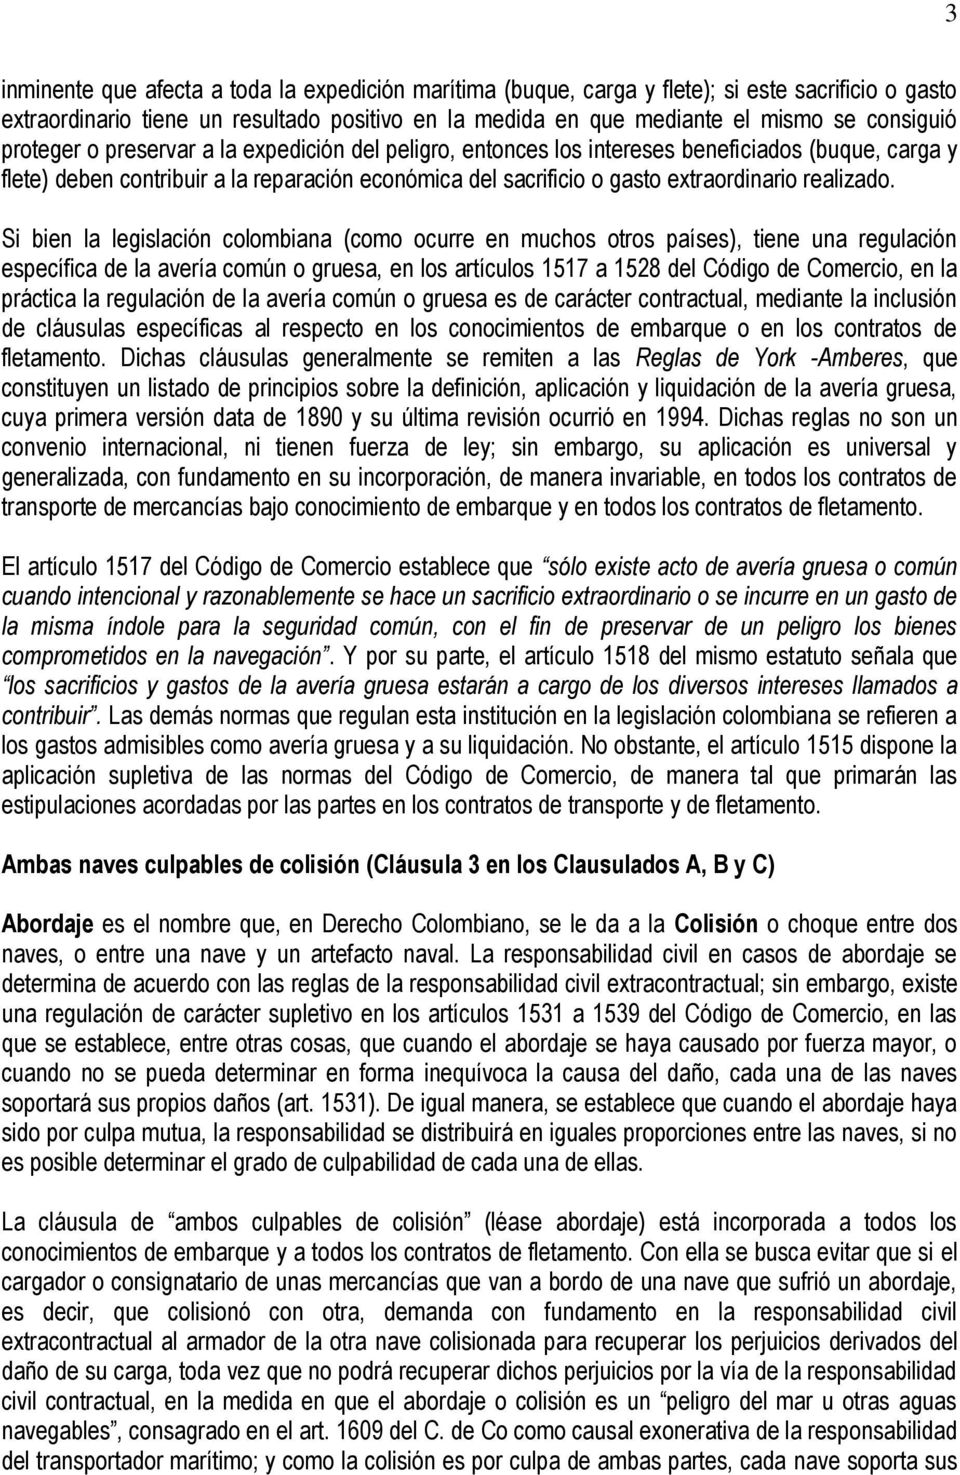 Si bien la legislación colombiana (como ocurre en muchos otros países), tiene una regulación específica de la avería común o gruesa, en los artículos 1517 a 1528 del Código de Comercio, en la